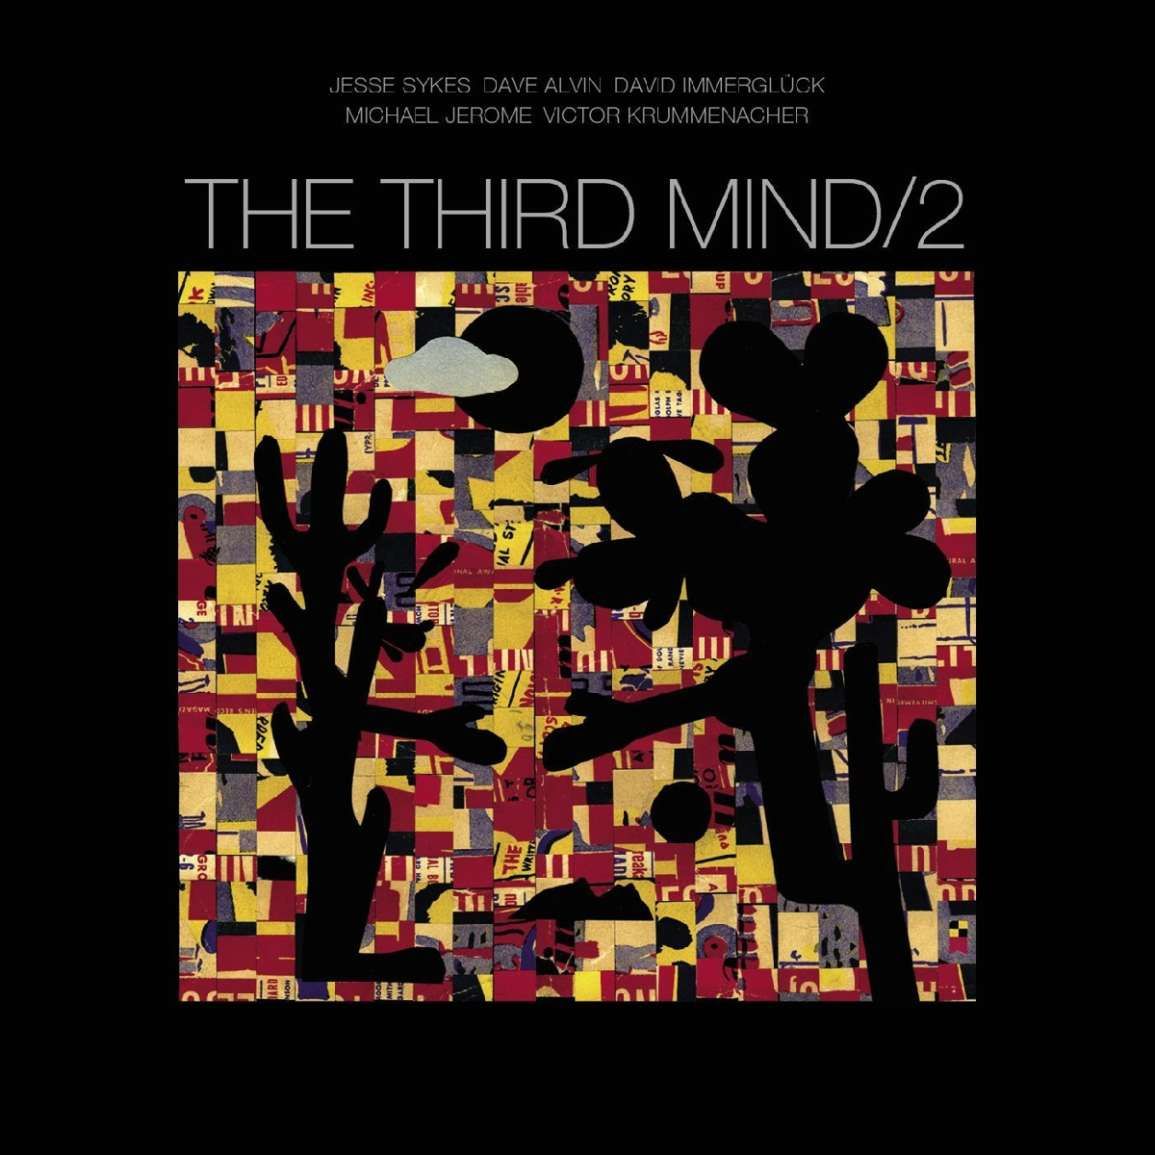 The Third Mind - The Third Mind:2